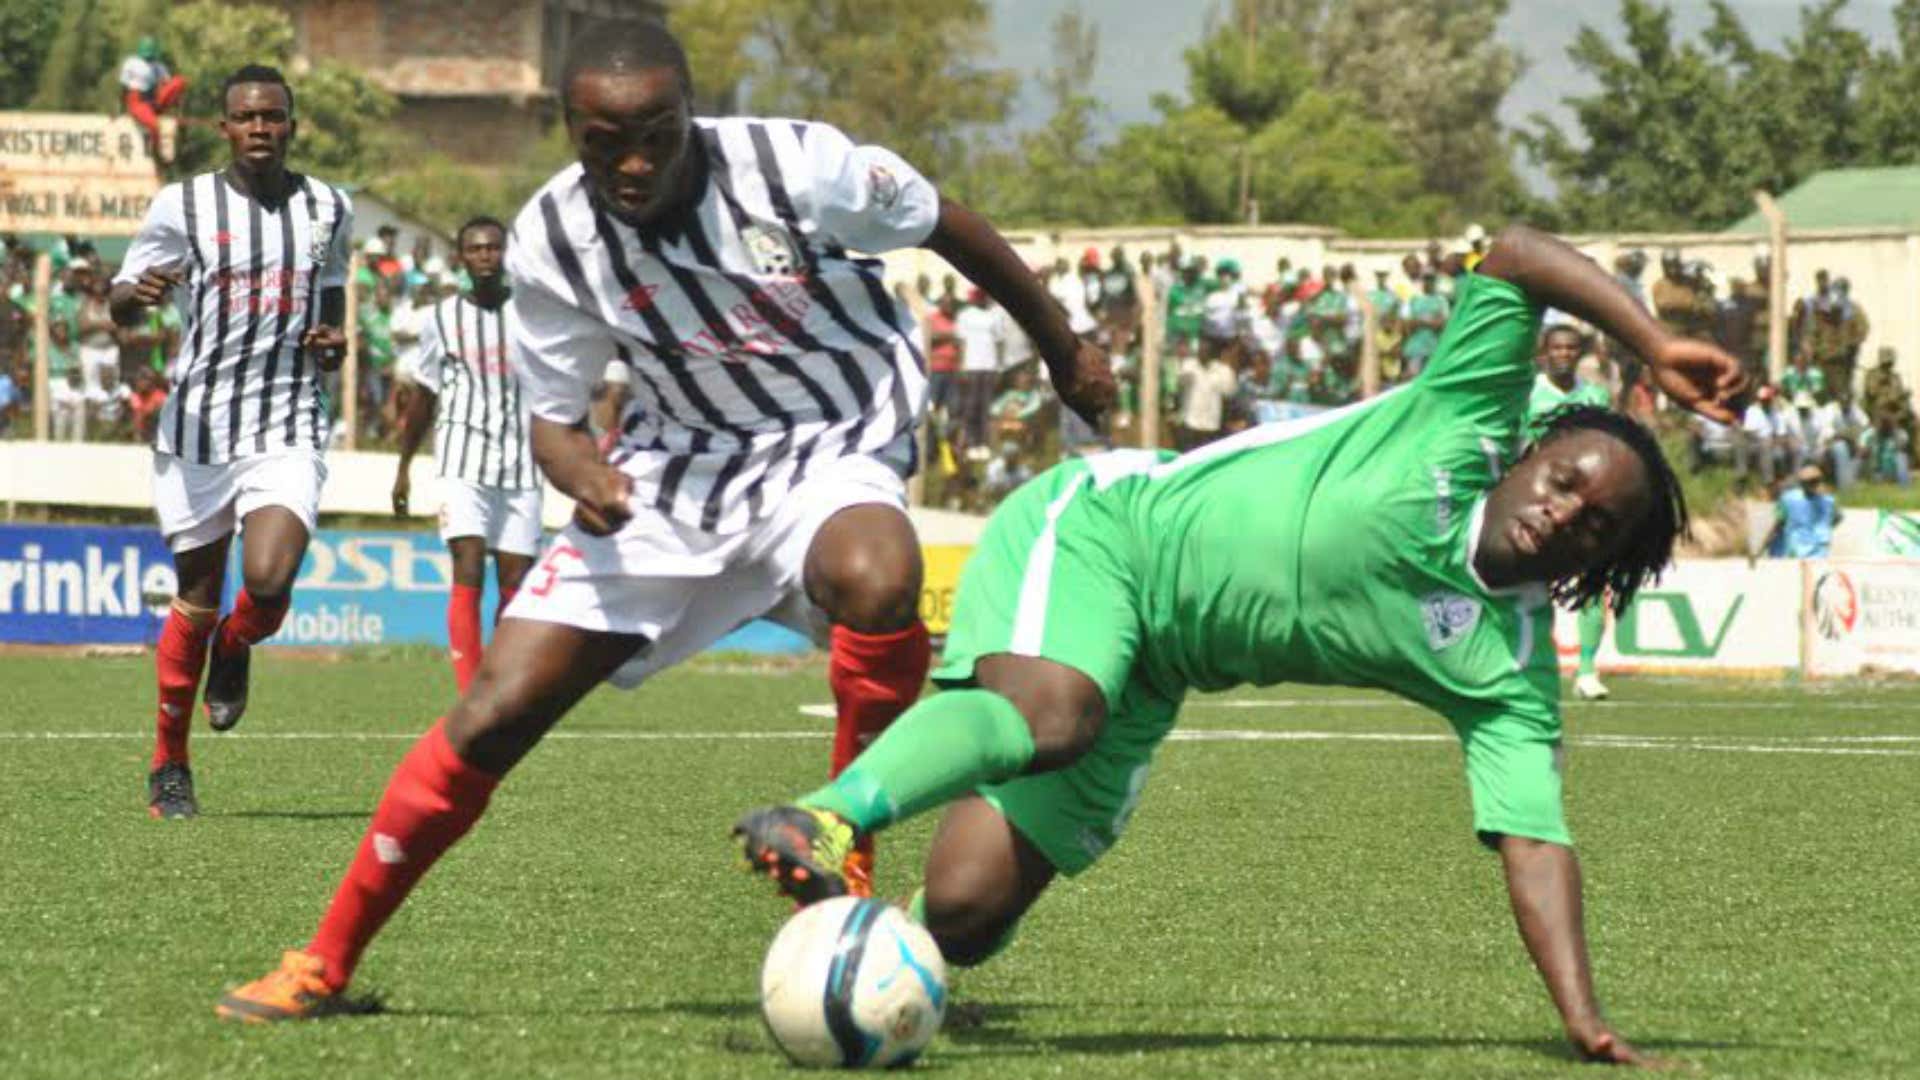 Sserunkuma emerged Kenyan Premier League Golden Boot winner with 16 goals